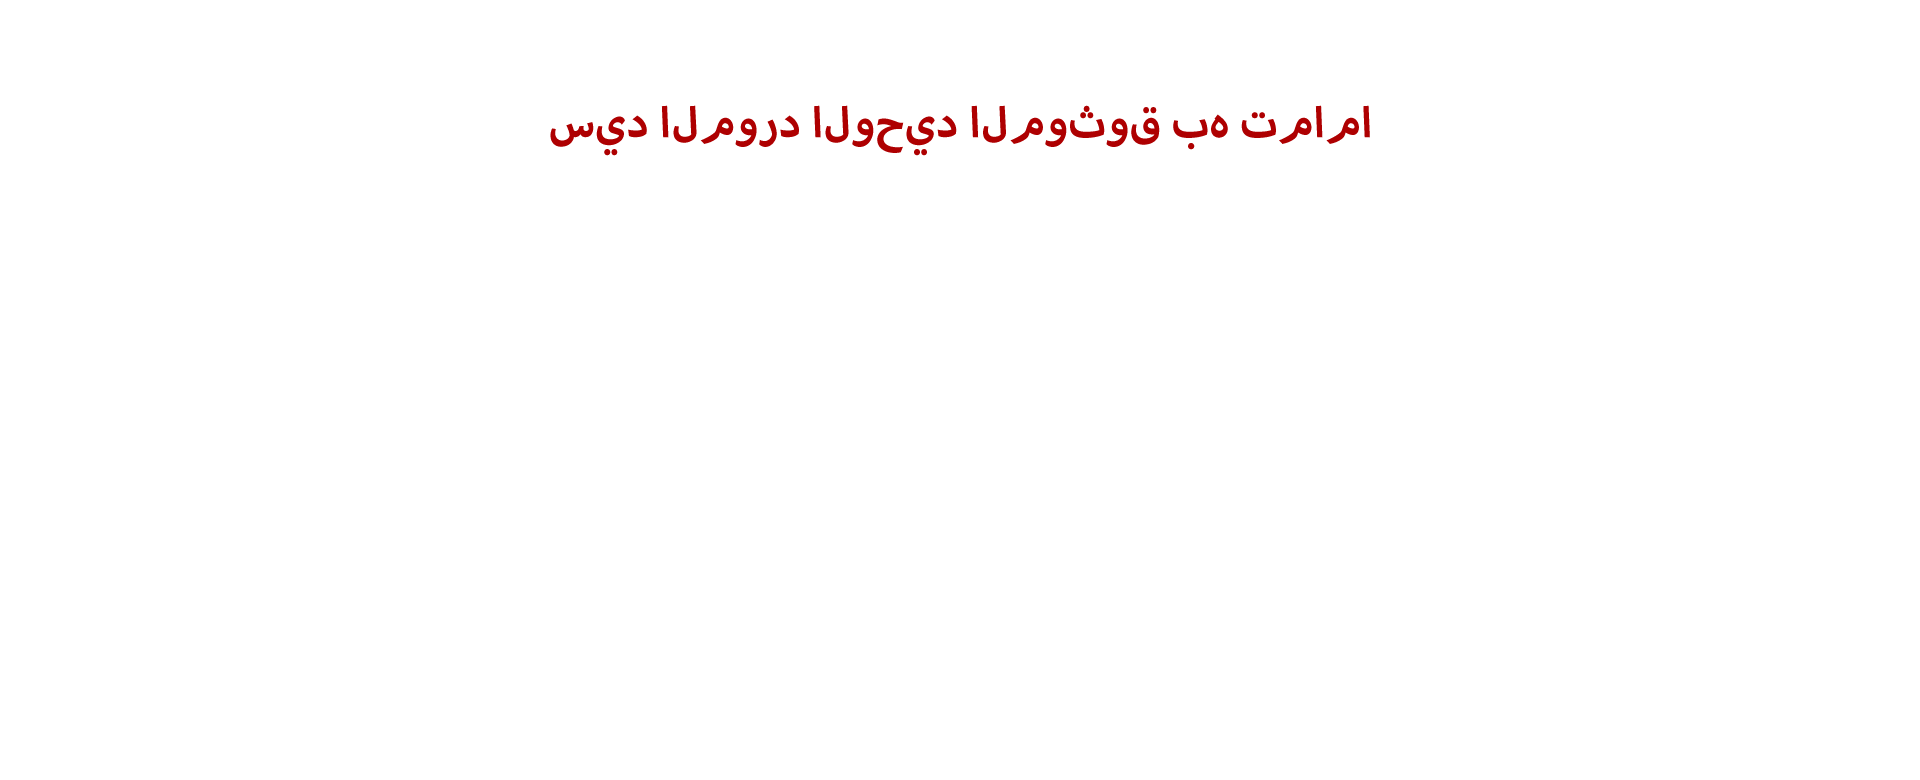 天津世科banner阿拉伯语